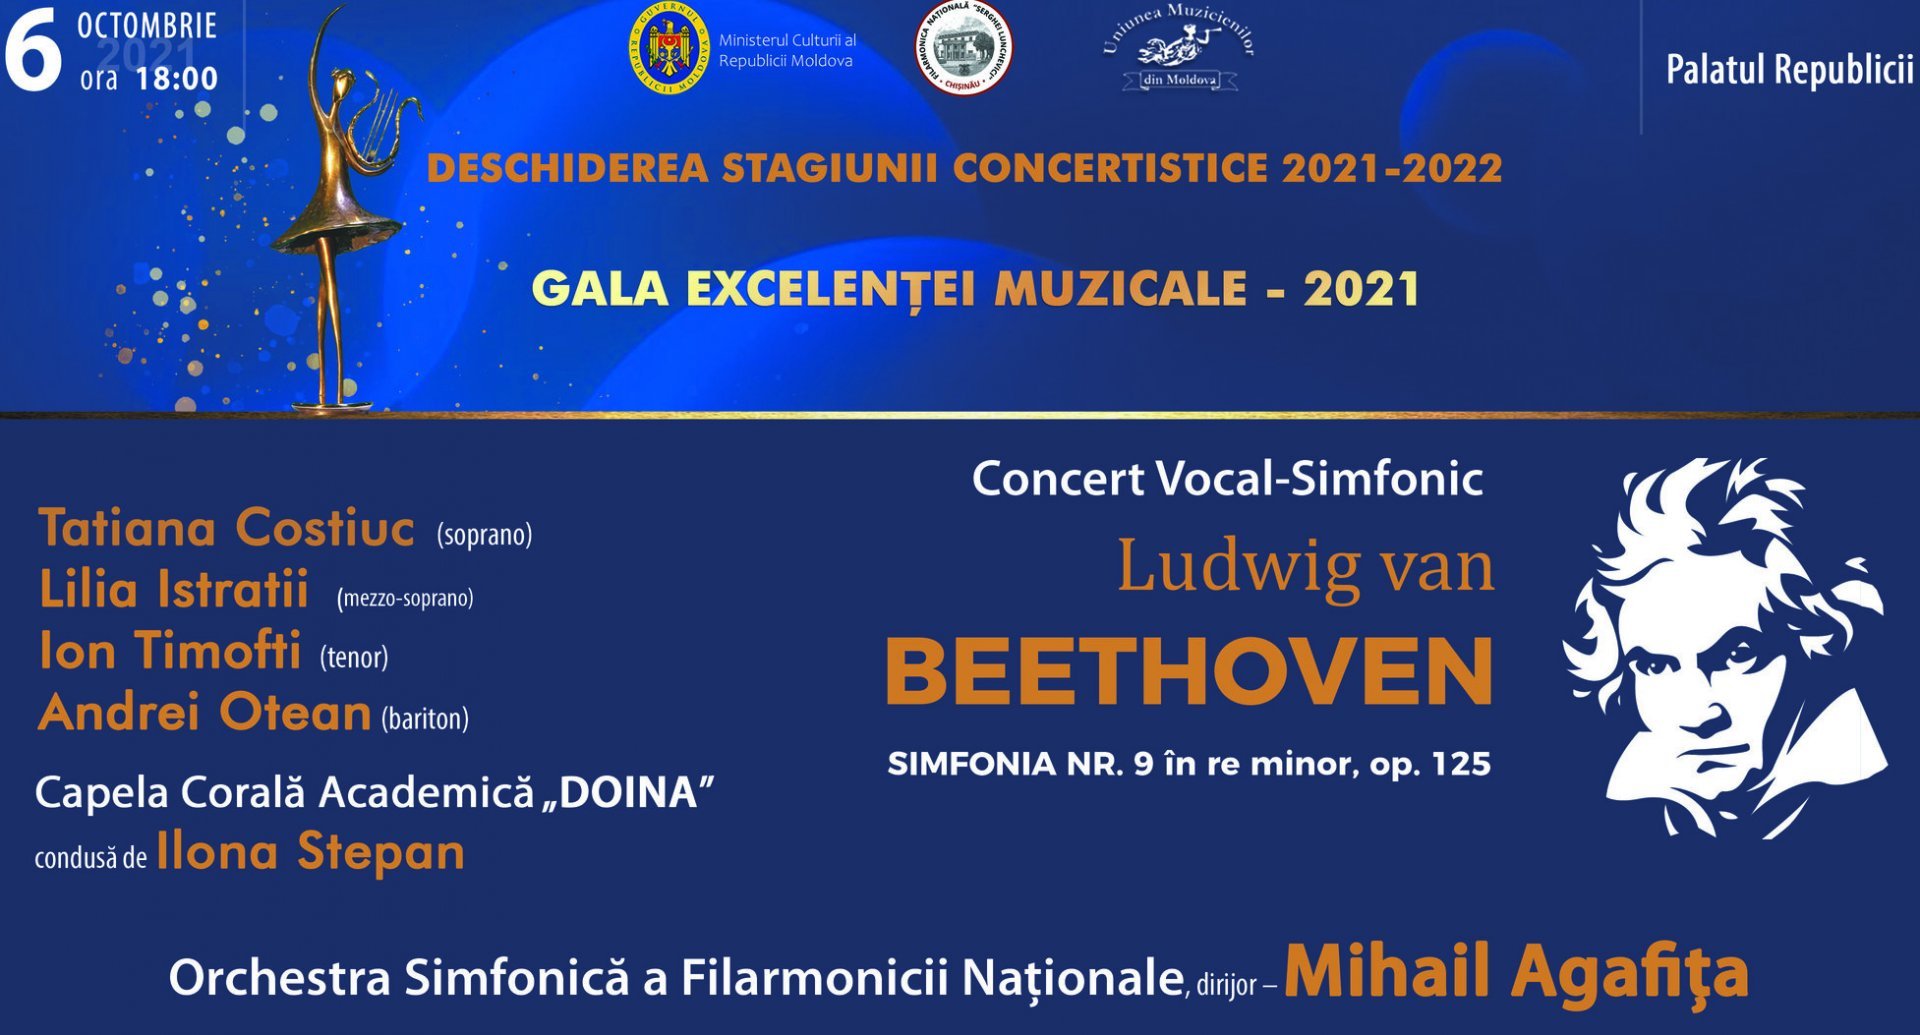 Concert Vocal-Simfonic - Ludwig van Beethoven 